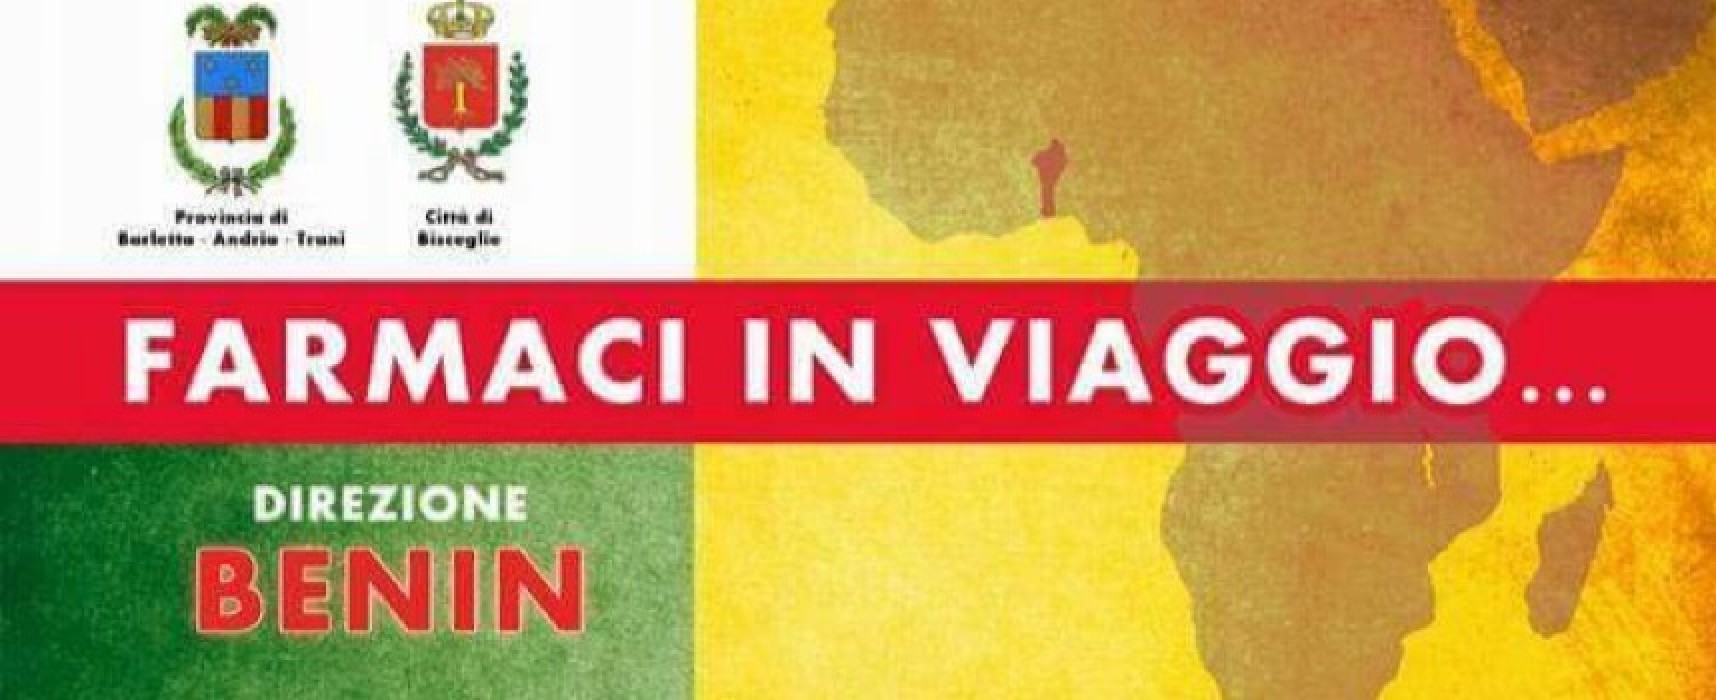 “Direzione Benin”, parte domani la raccolta farmaci promossa da Medici senza vacanze /DETTAGLI